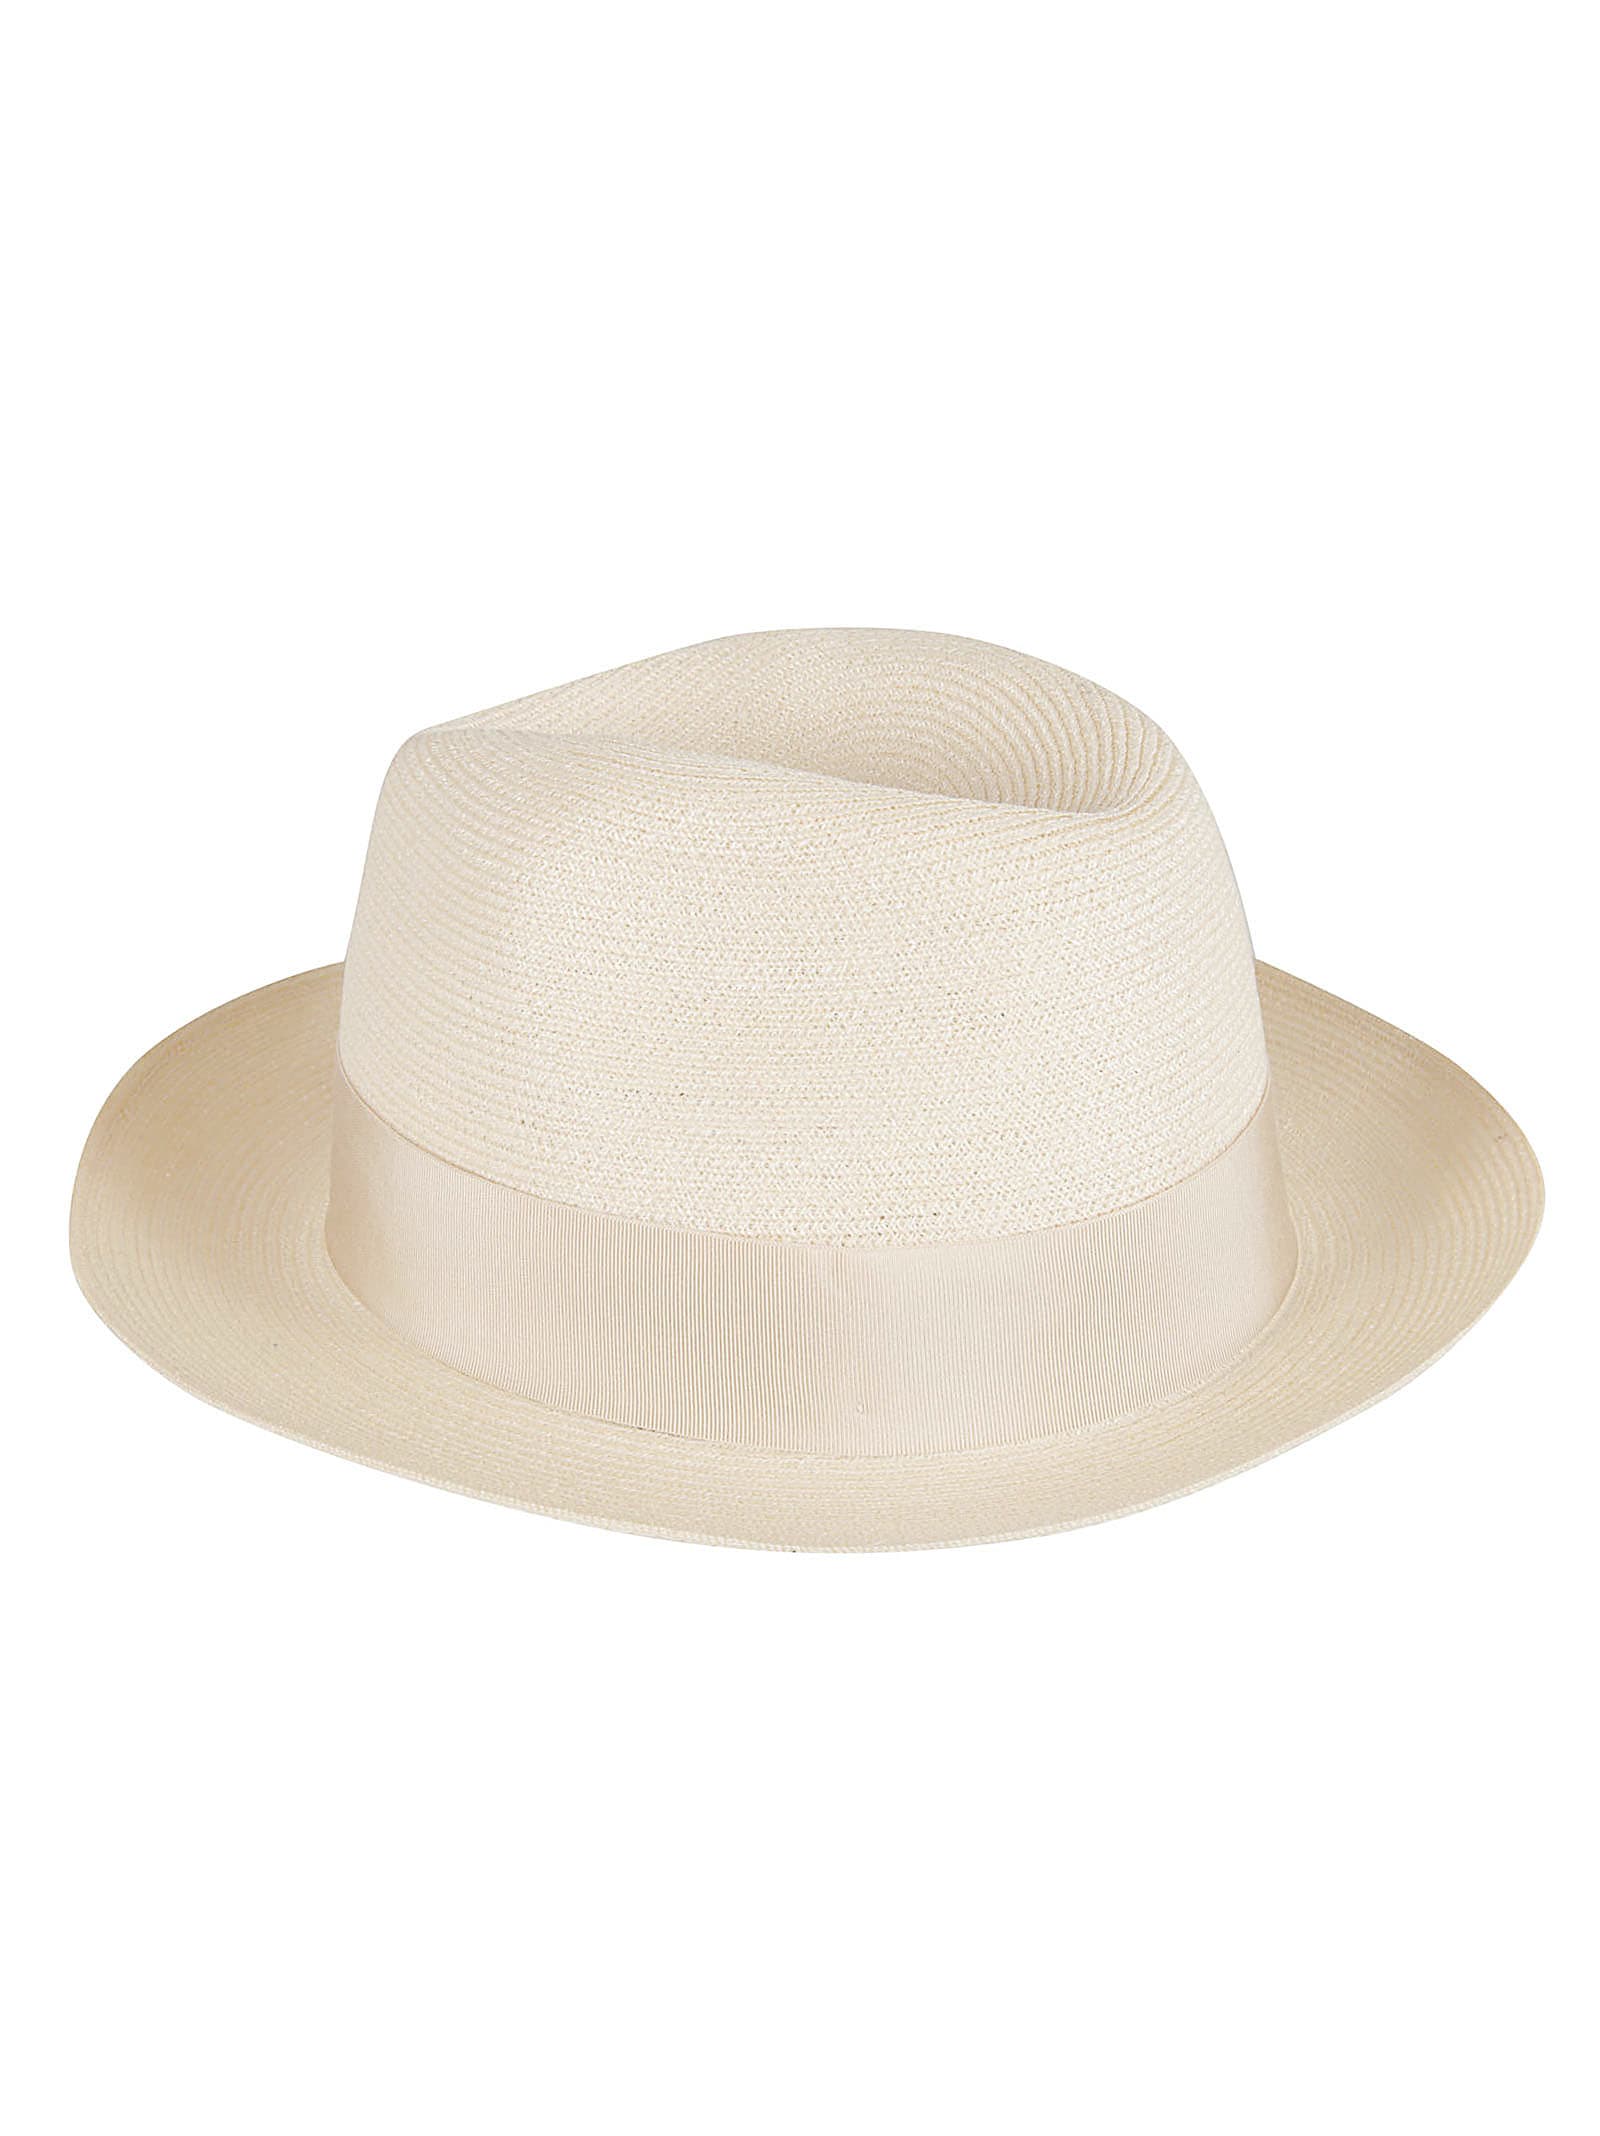 Borsalino Canapa Bow Detail Hat